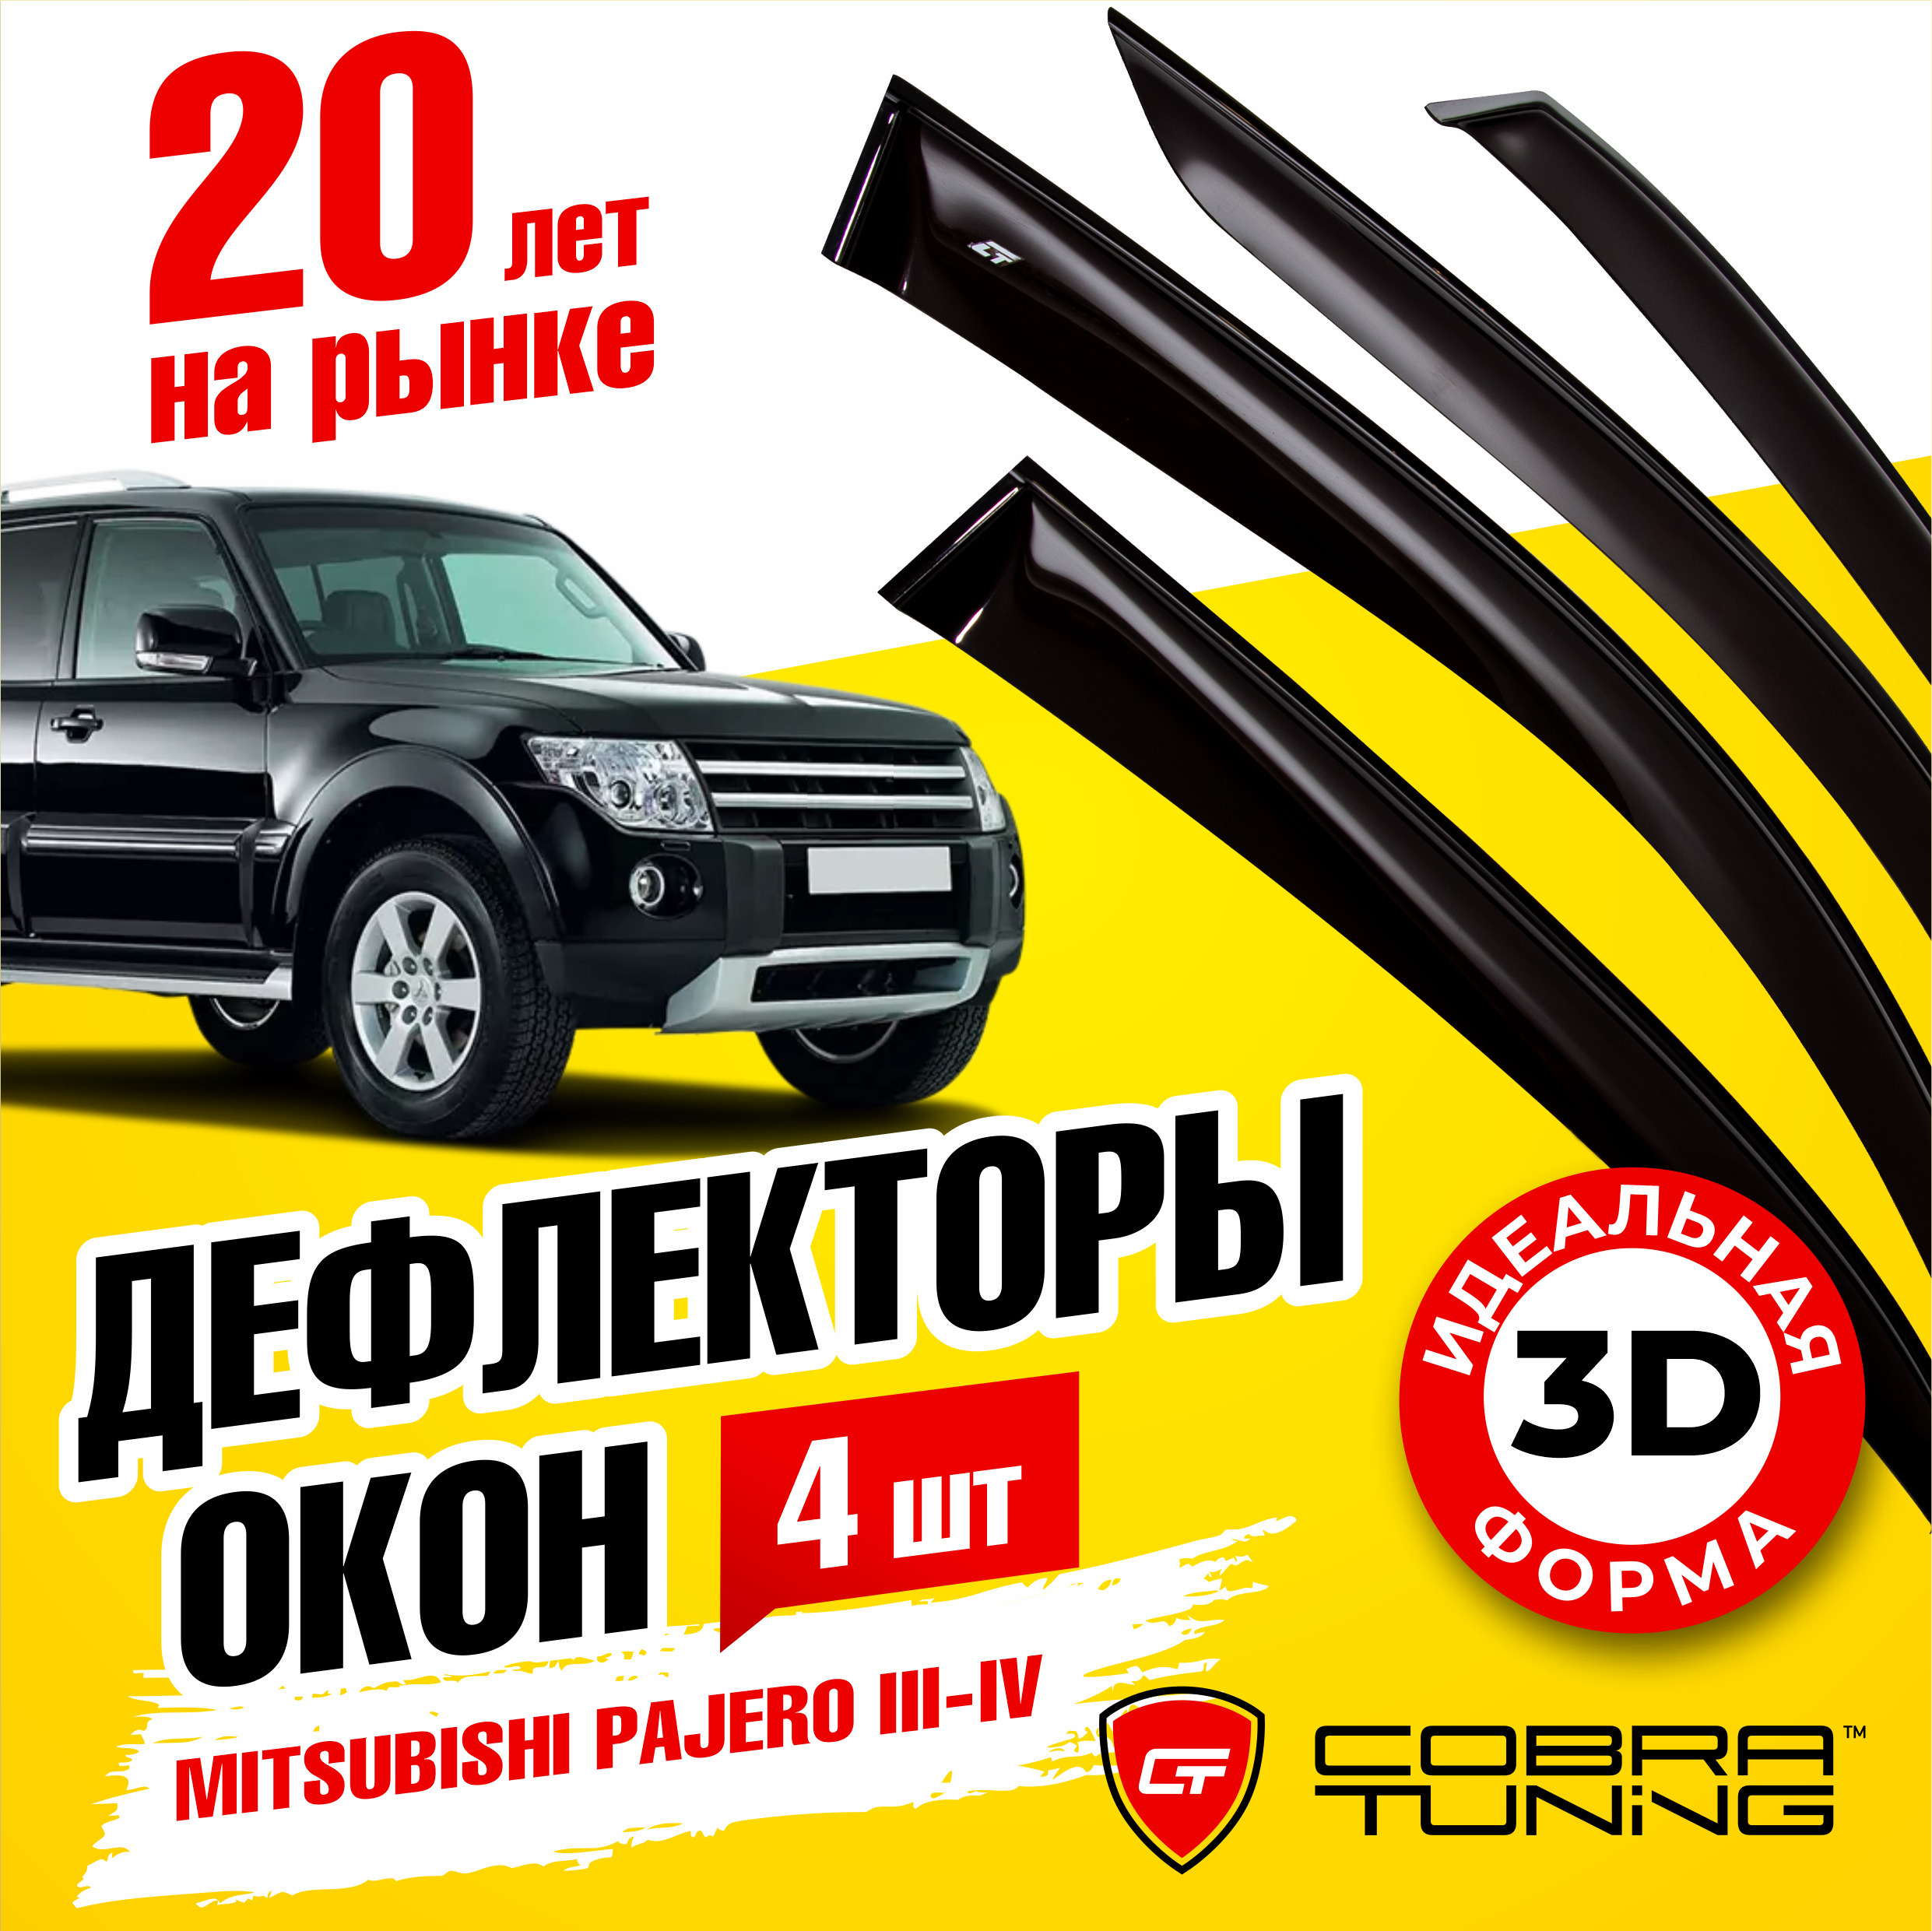 Продажа Mitsubishi Pajero Wagon в Киеве (55 авто)